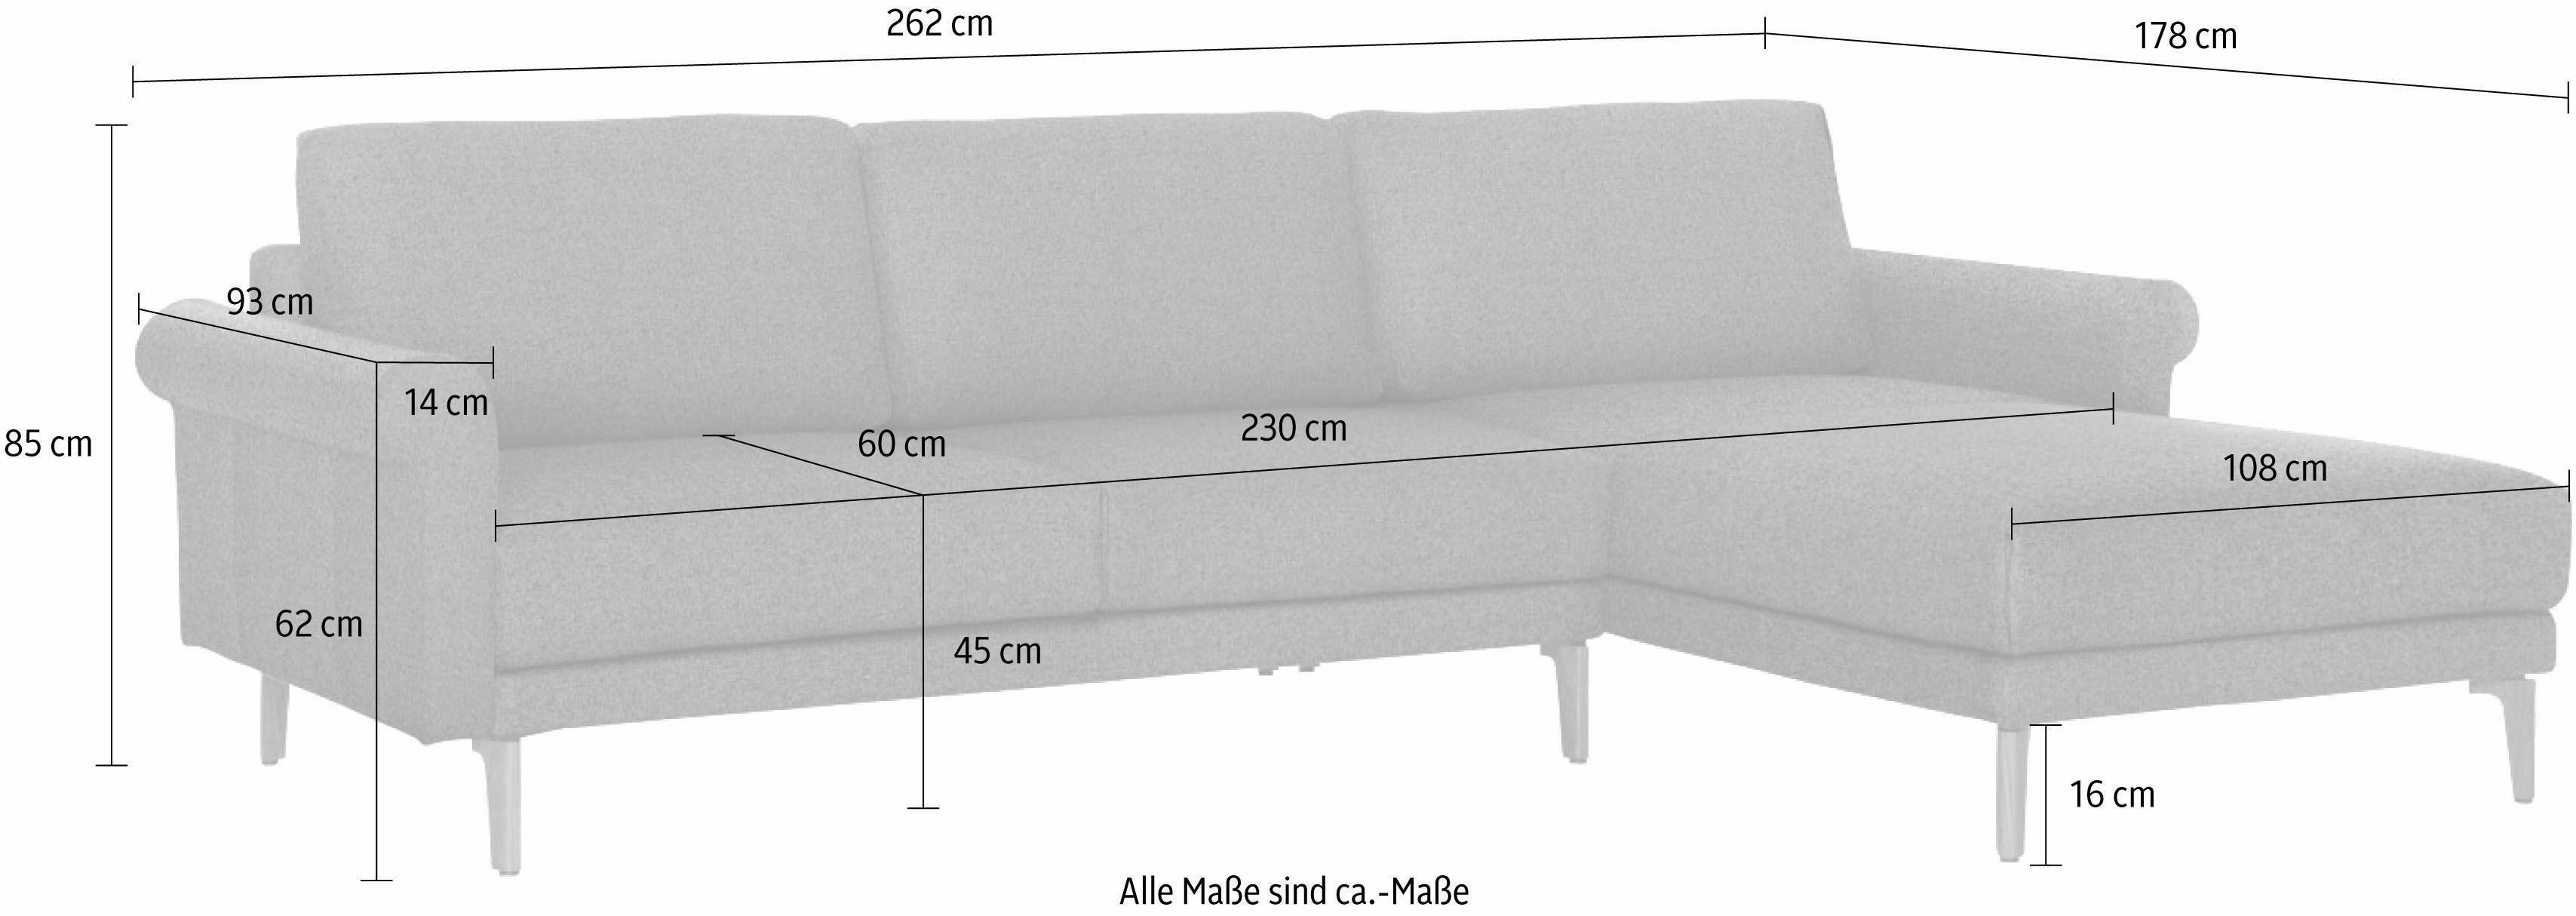 Nussbaum Landhaus, Ecksofa modern sofa Fuß Armlehne hülsta 262 Schnecke cm, hs.450, Breite